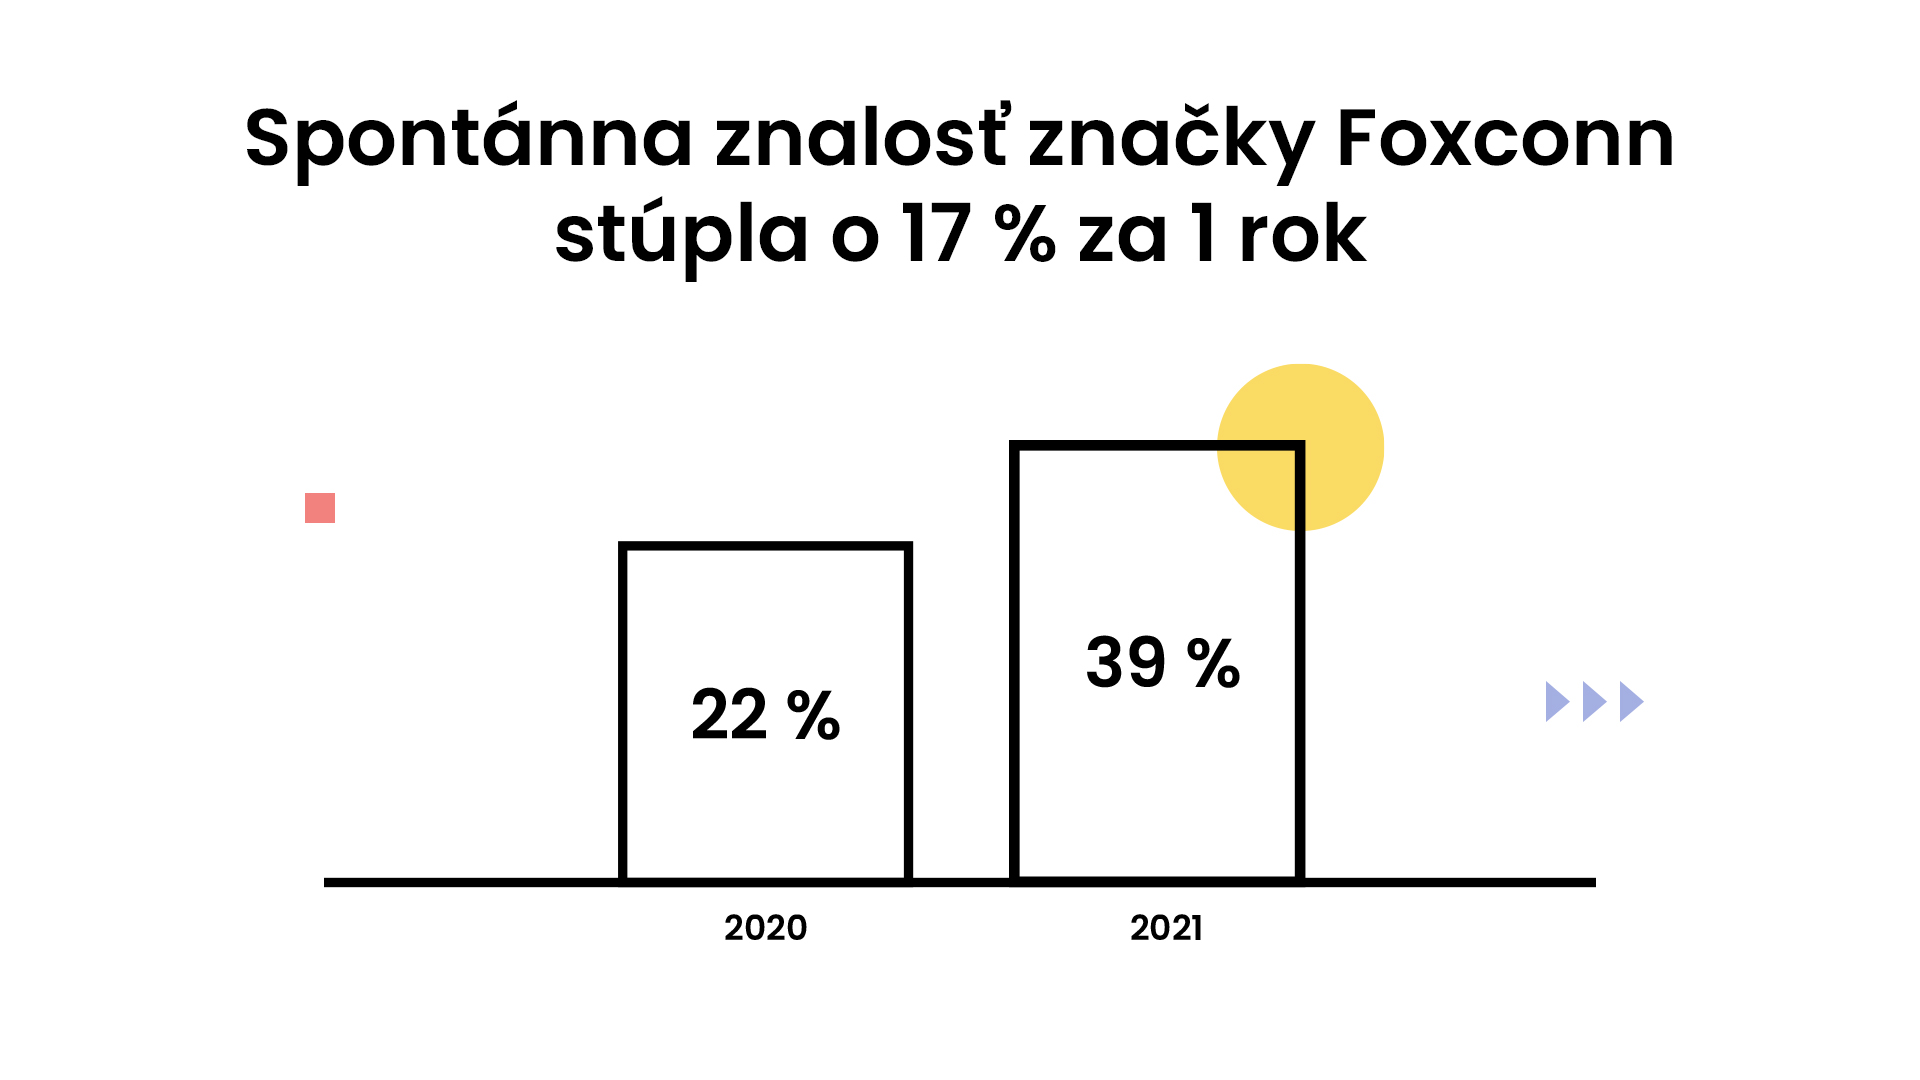 Foxconn Slovakia